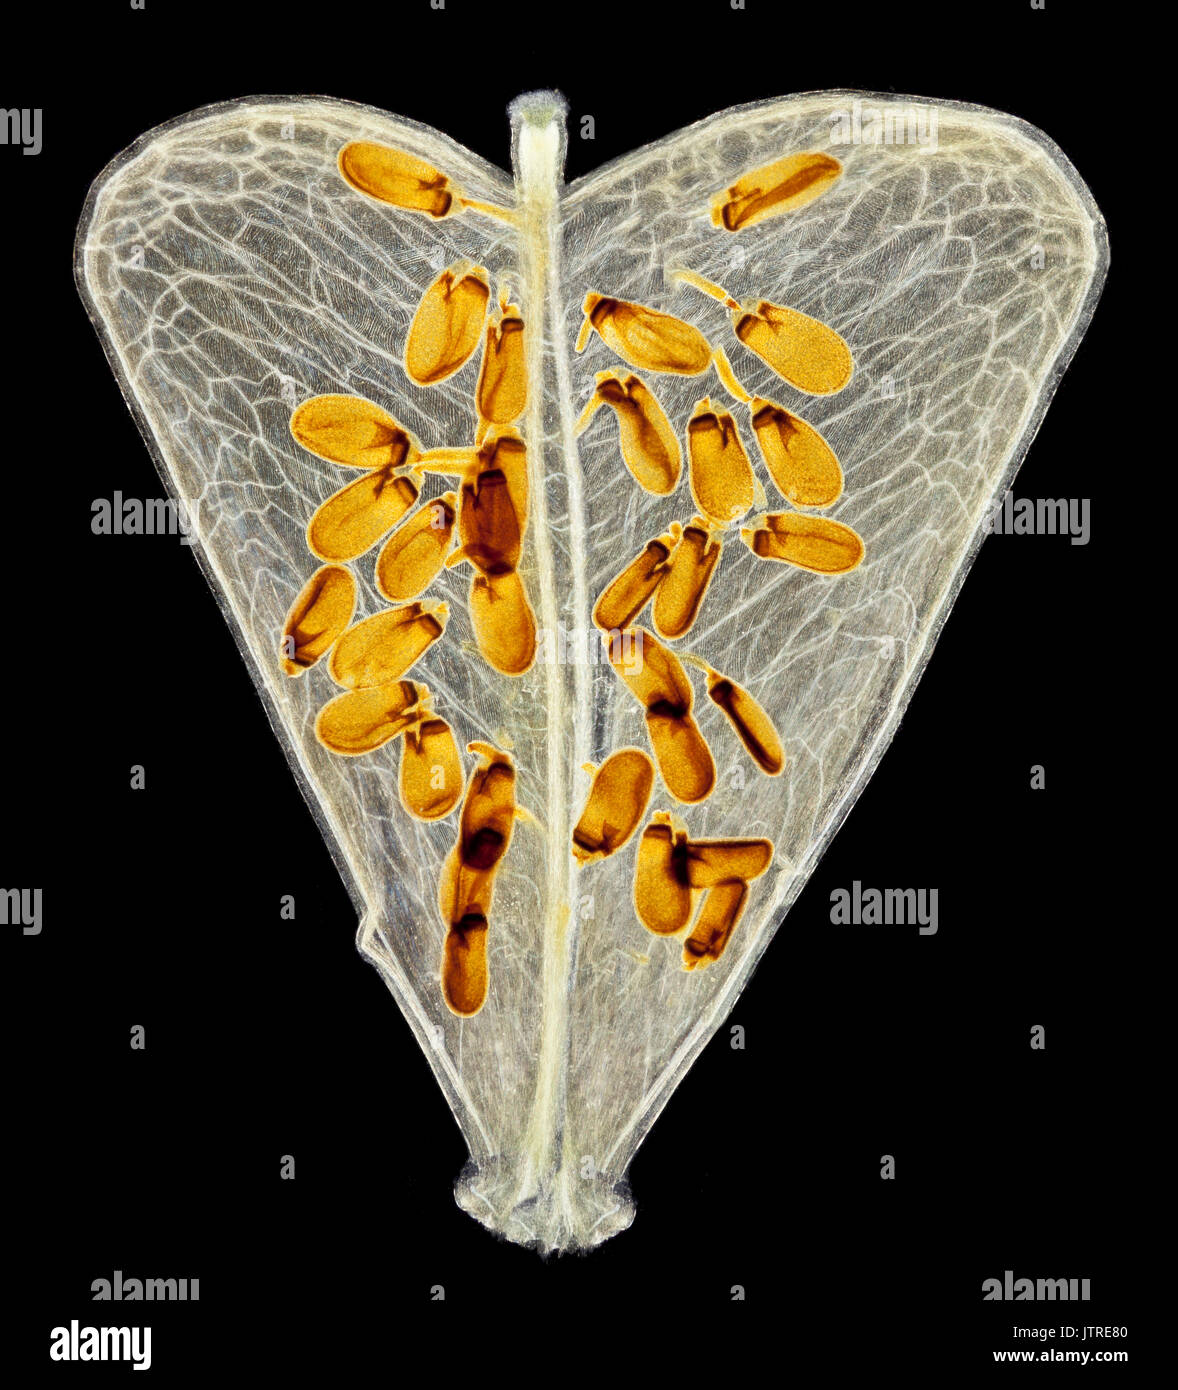 Hirten Geldbeutel seed Pod mit Samen, Capsella bursa-pastoris, schwarzer Hintergrund Stockfoto